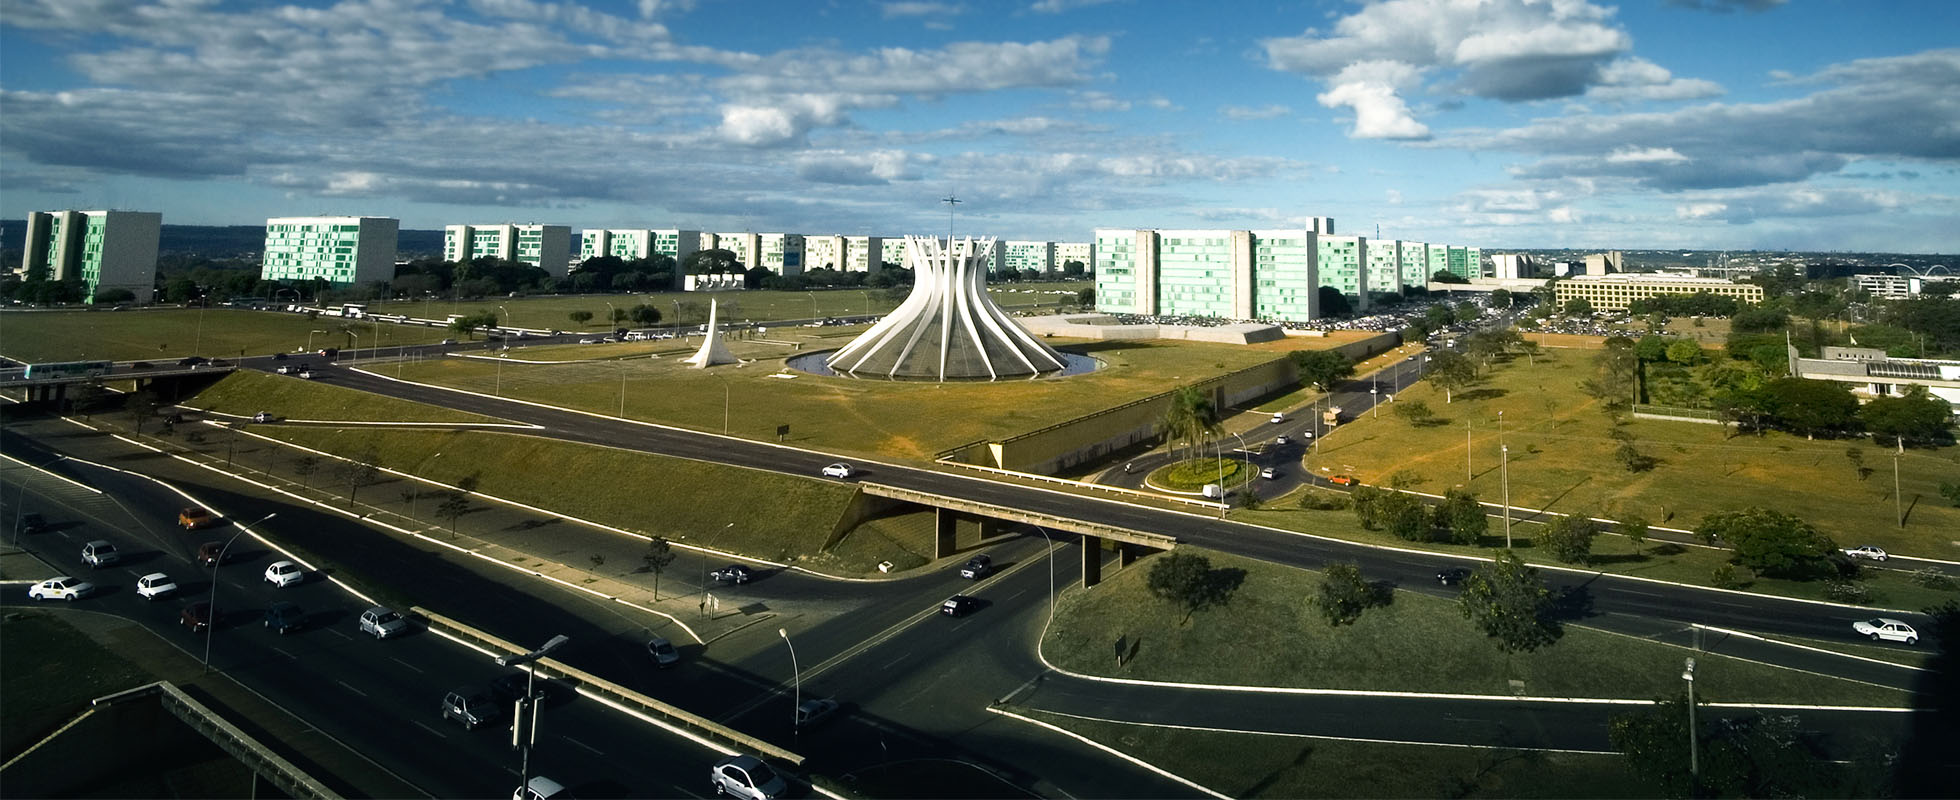 Arquitetos DF alerta para descaso do GDF com planejamento urbano de Brasília